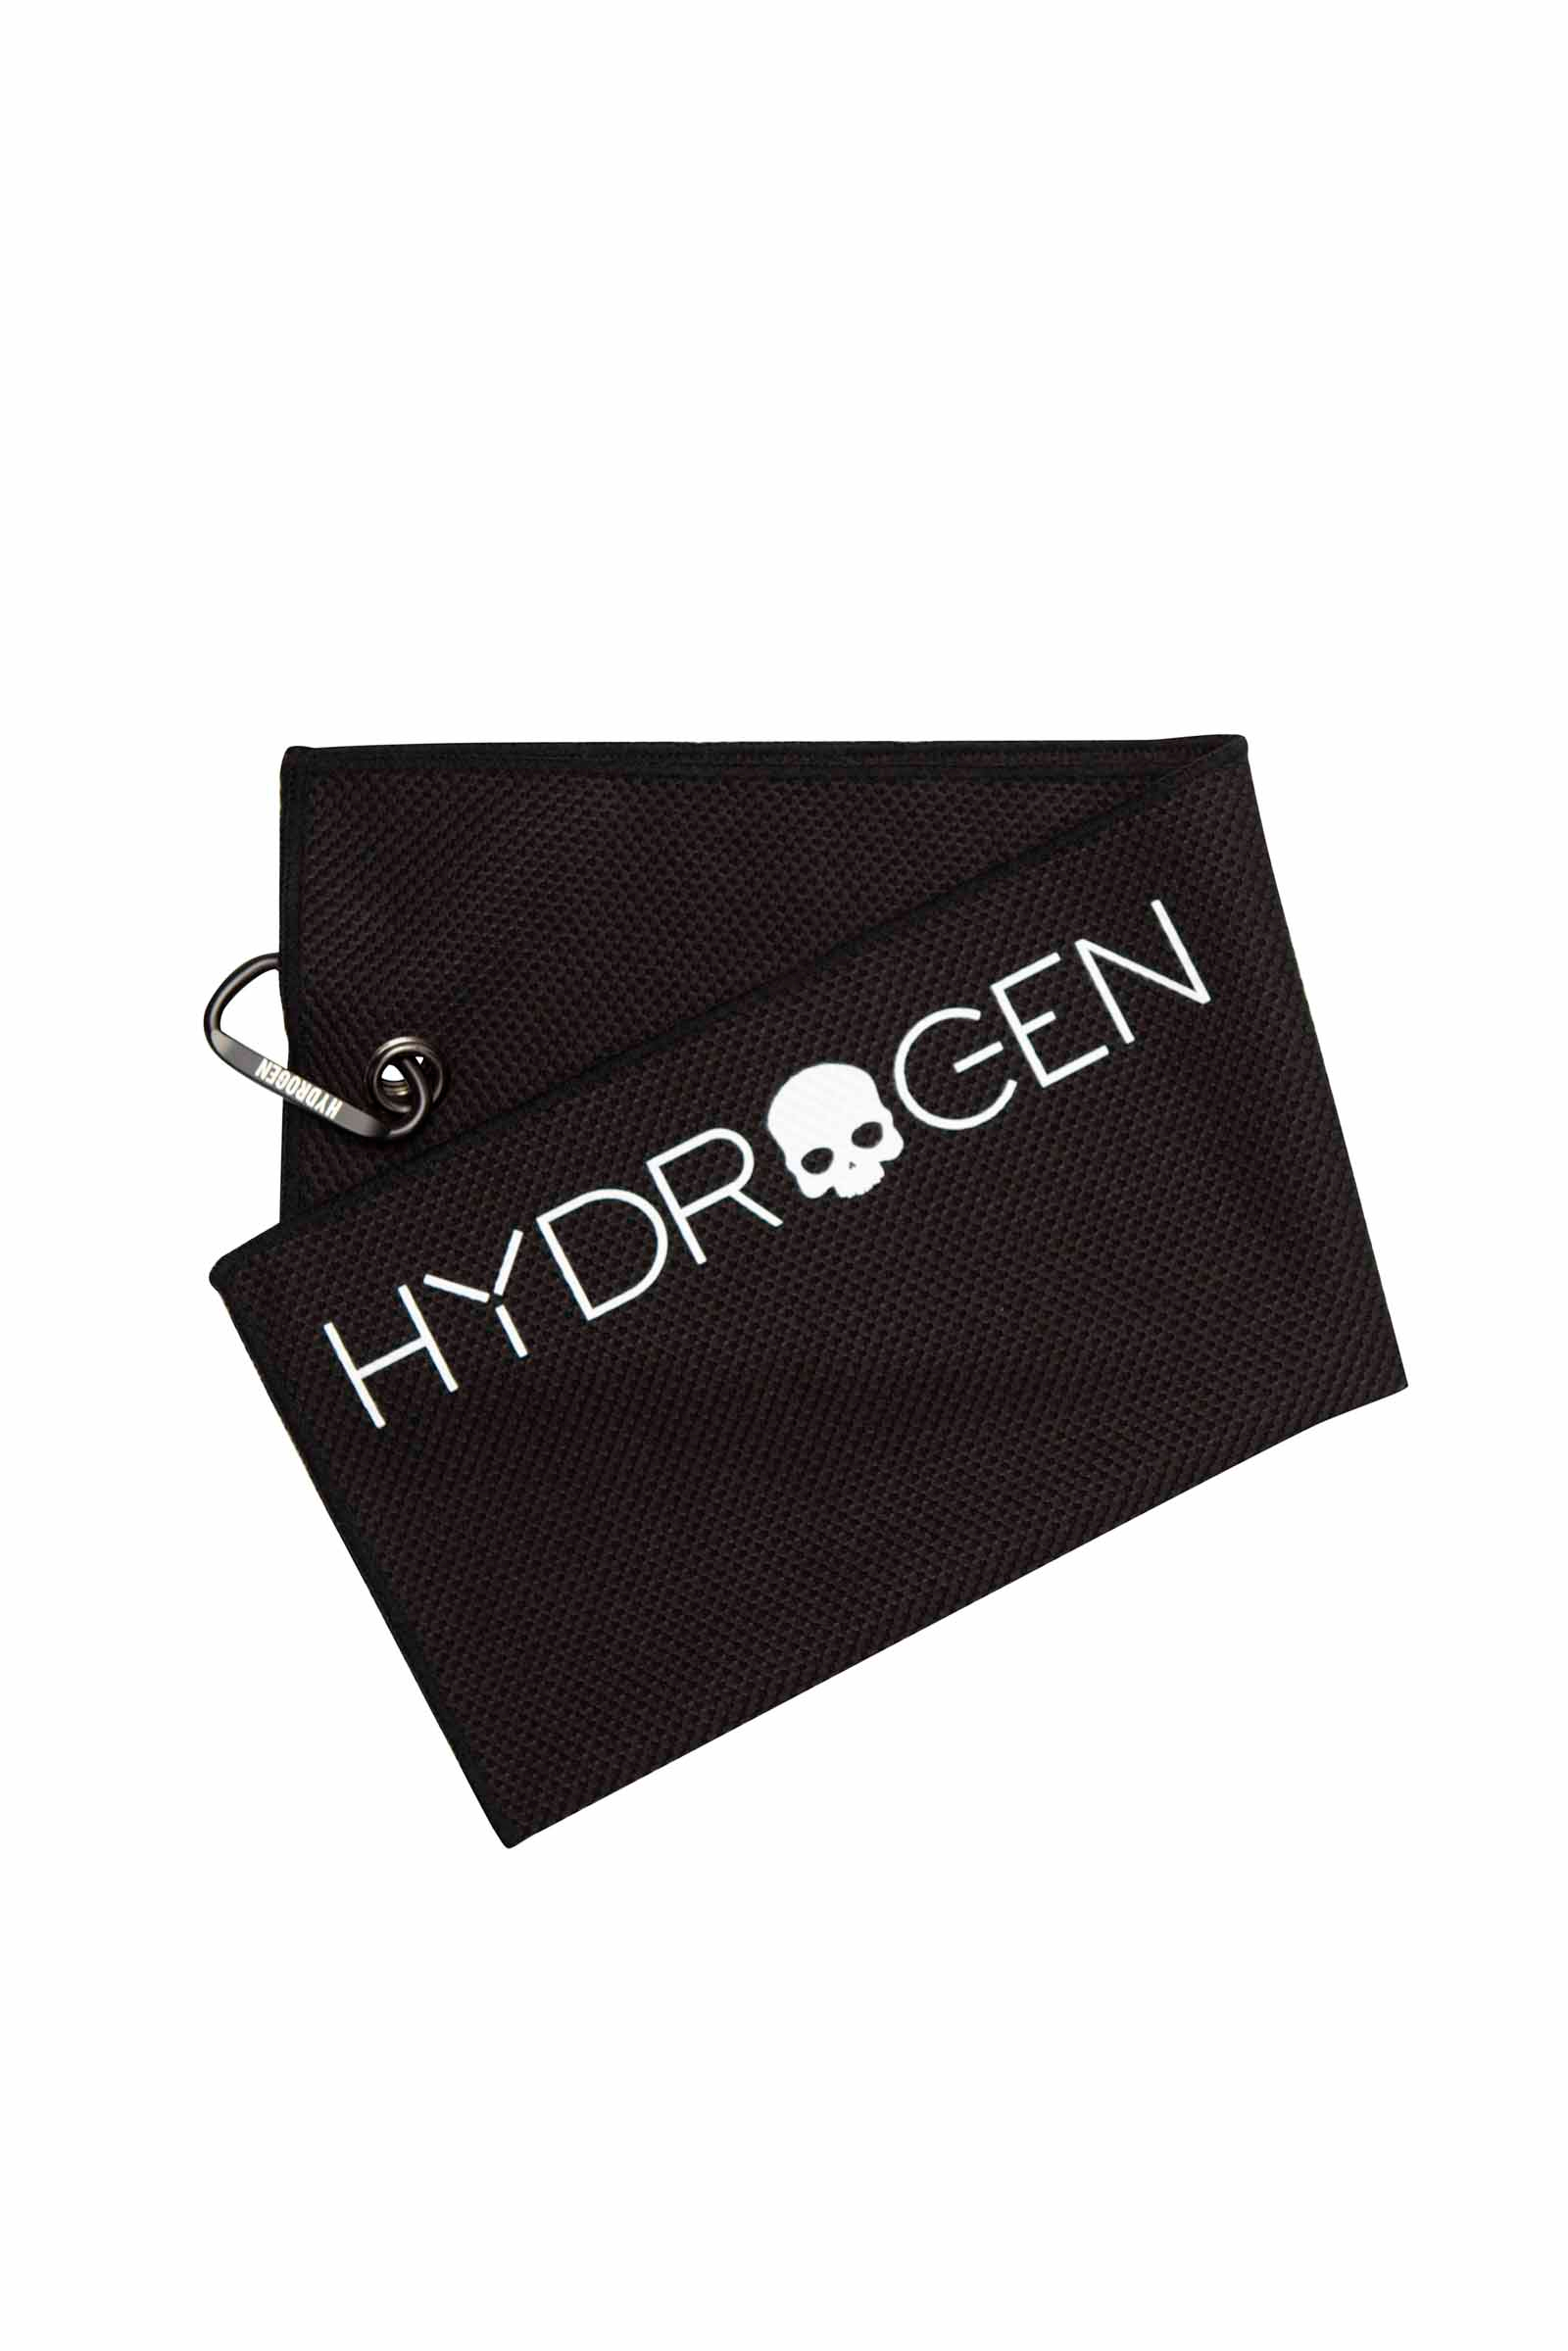 TOWEL - BLACK - Hydrogen - Luxury Sportwear